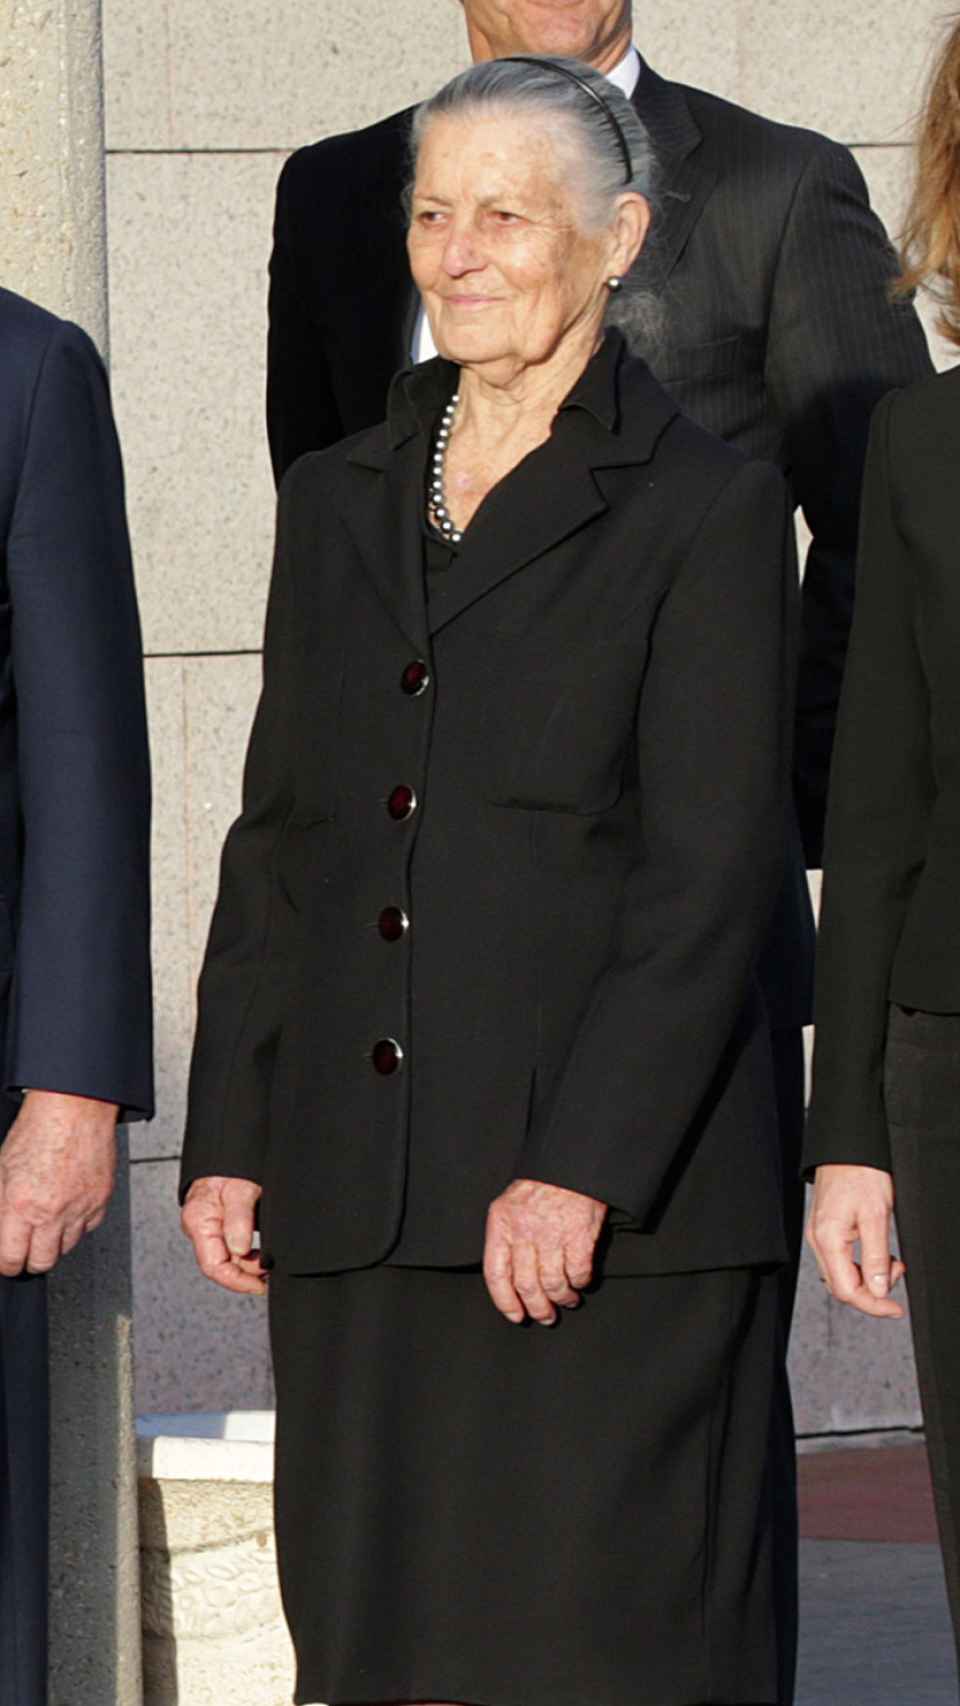 Teresa de Borbón y Borbón durante el entierro de Alicia de Borbón Parma en Madrid, en 2017.